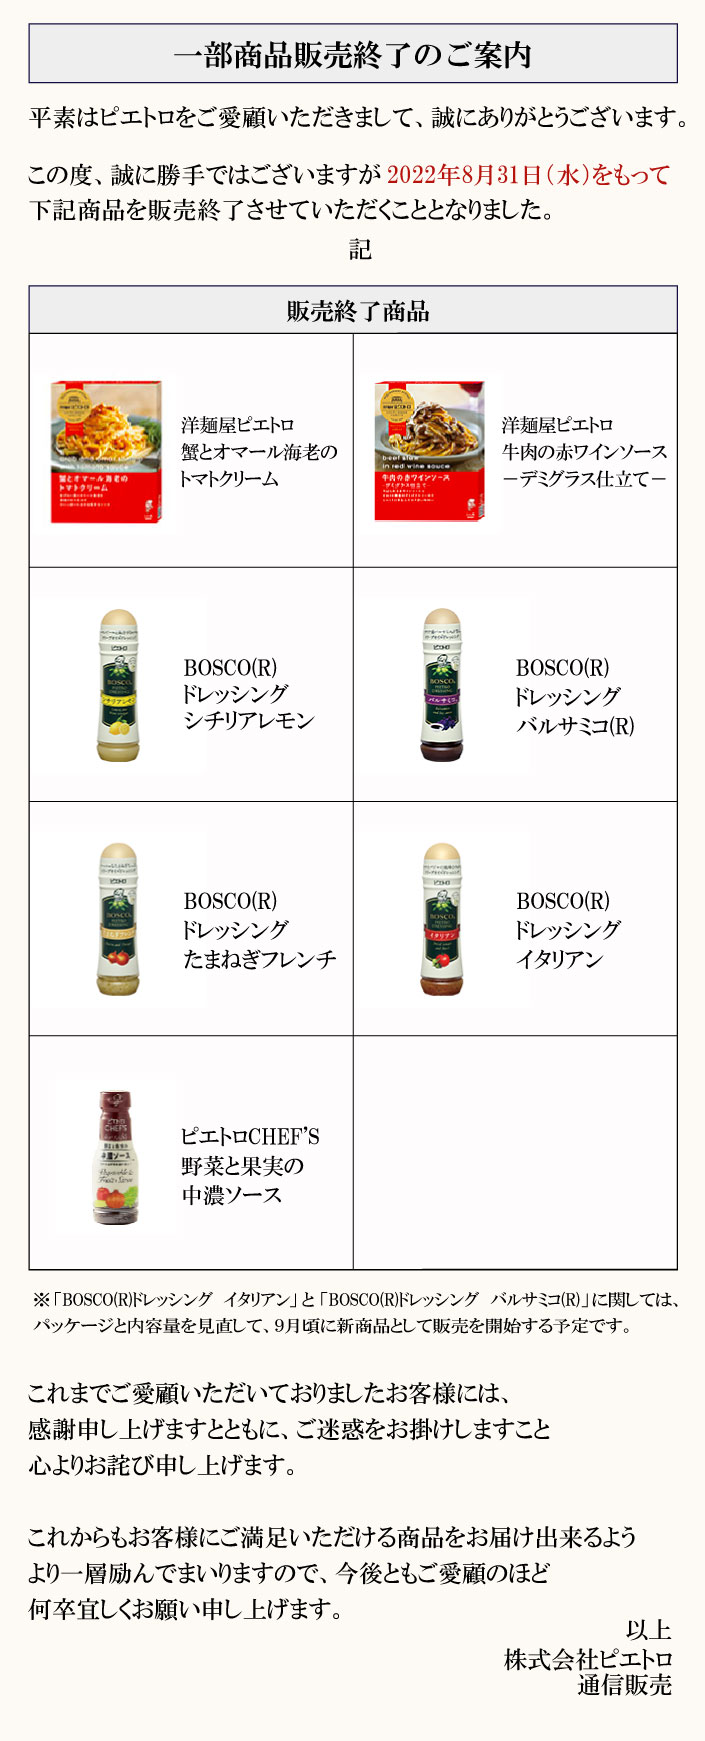 BOSCO(R)ドレッシングシリーズと洋麺屋ピエトロは2020年3月31日(火)をもって通信販売でのお取り扱いを終了させていただきます。※「BOSCO(R)ドレッシング「イタリアン」と「バルサミコ(R)」に関しては、パッケージと内容量を見直して、9月頃に新商品として販売を開始する予定です。